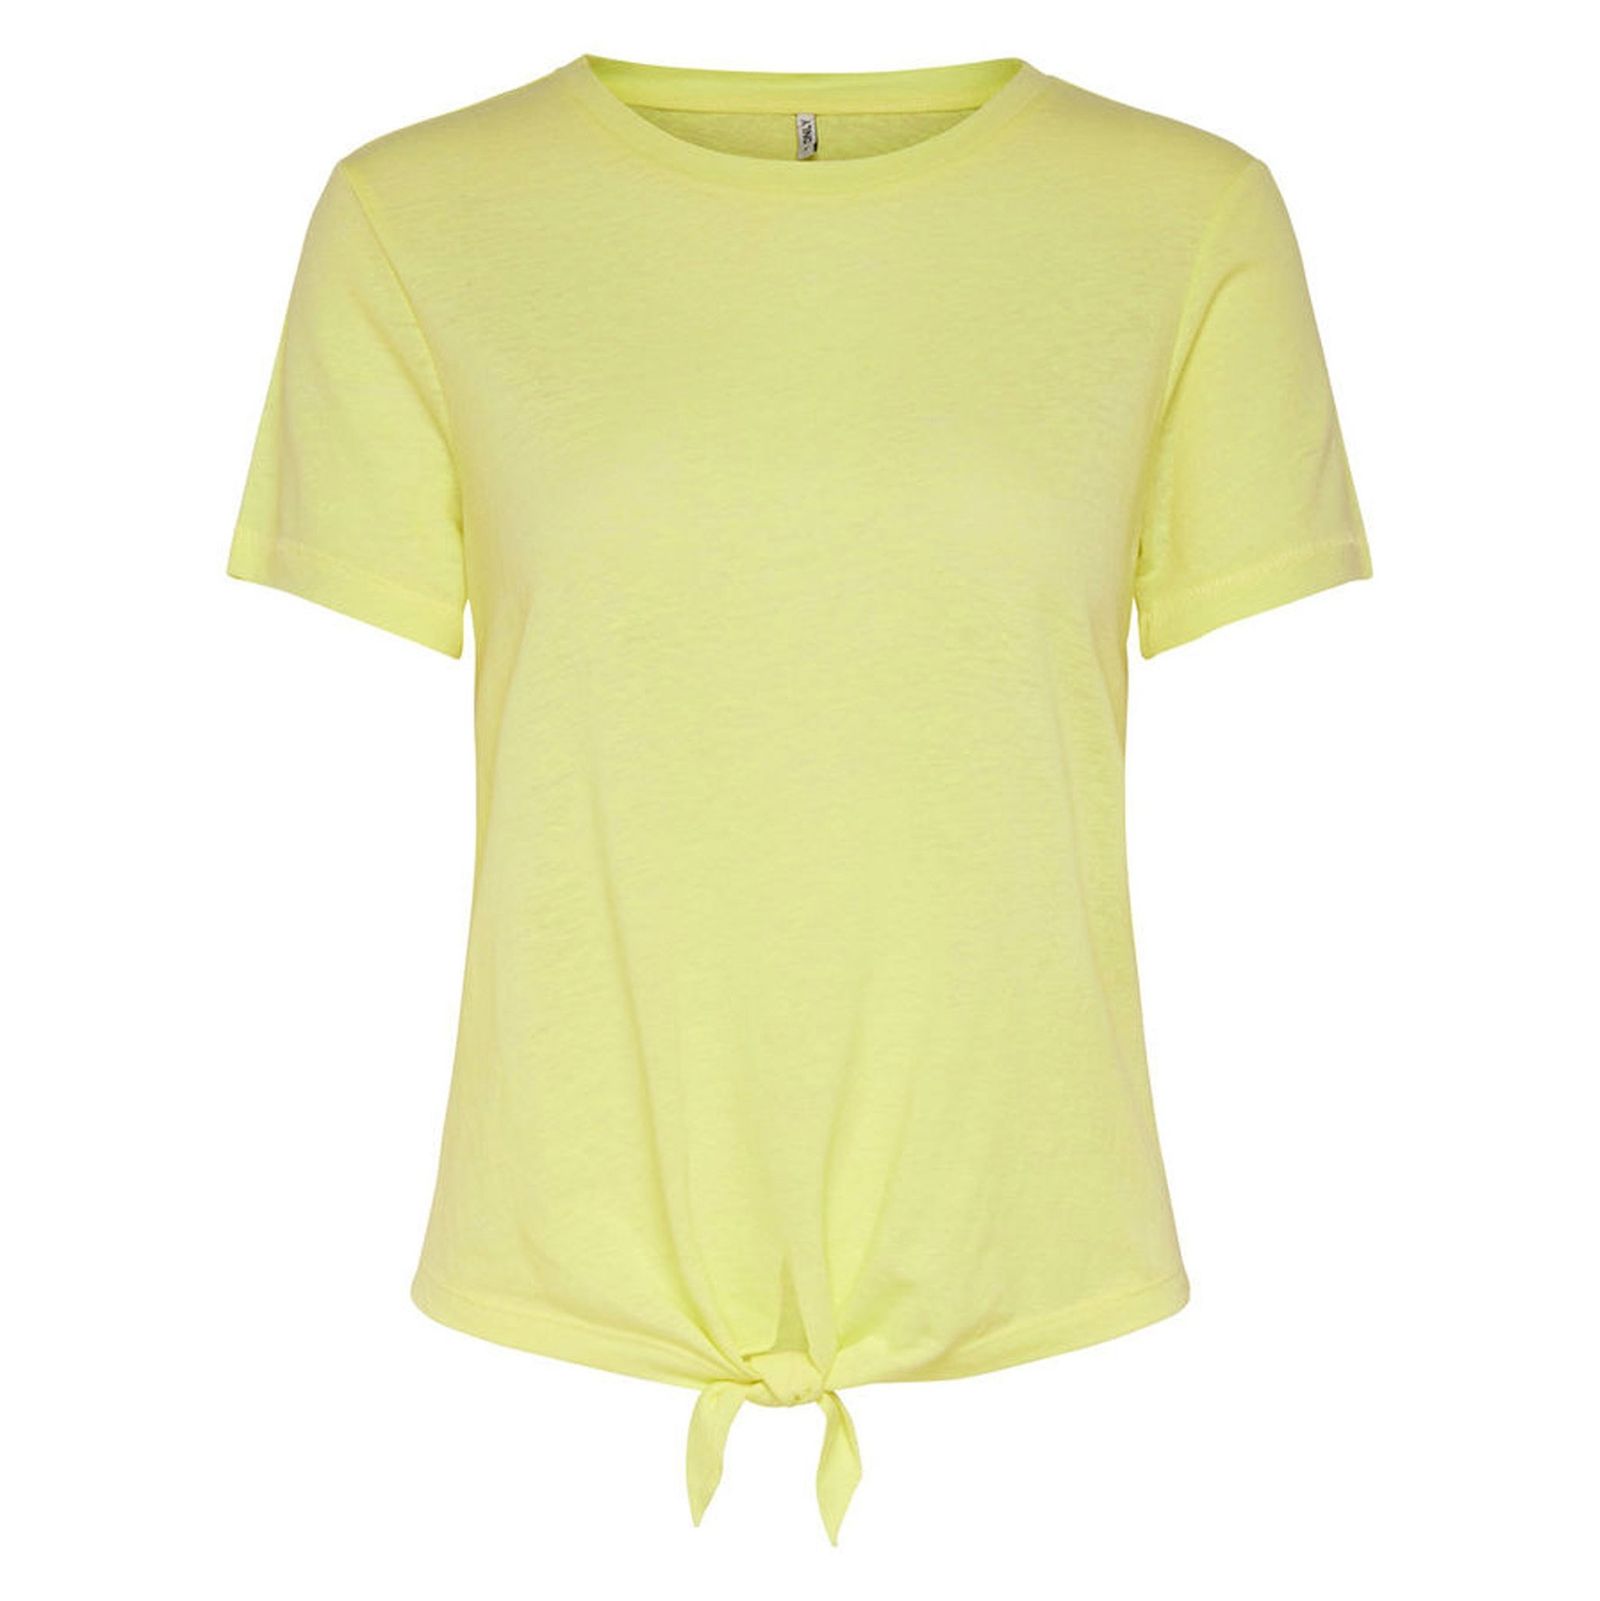 تی شرت یقه گرد زنانه - اونلی - زرد - 1